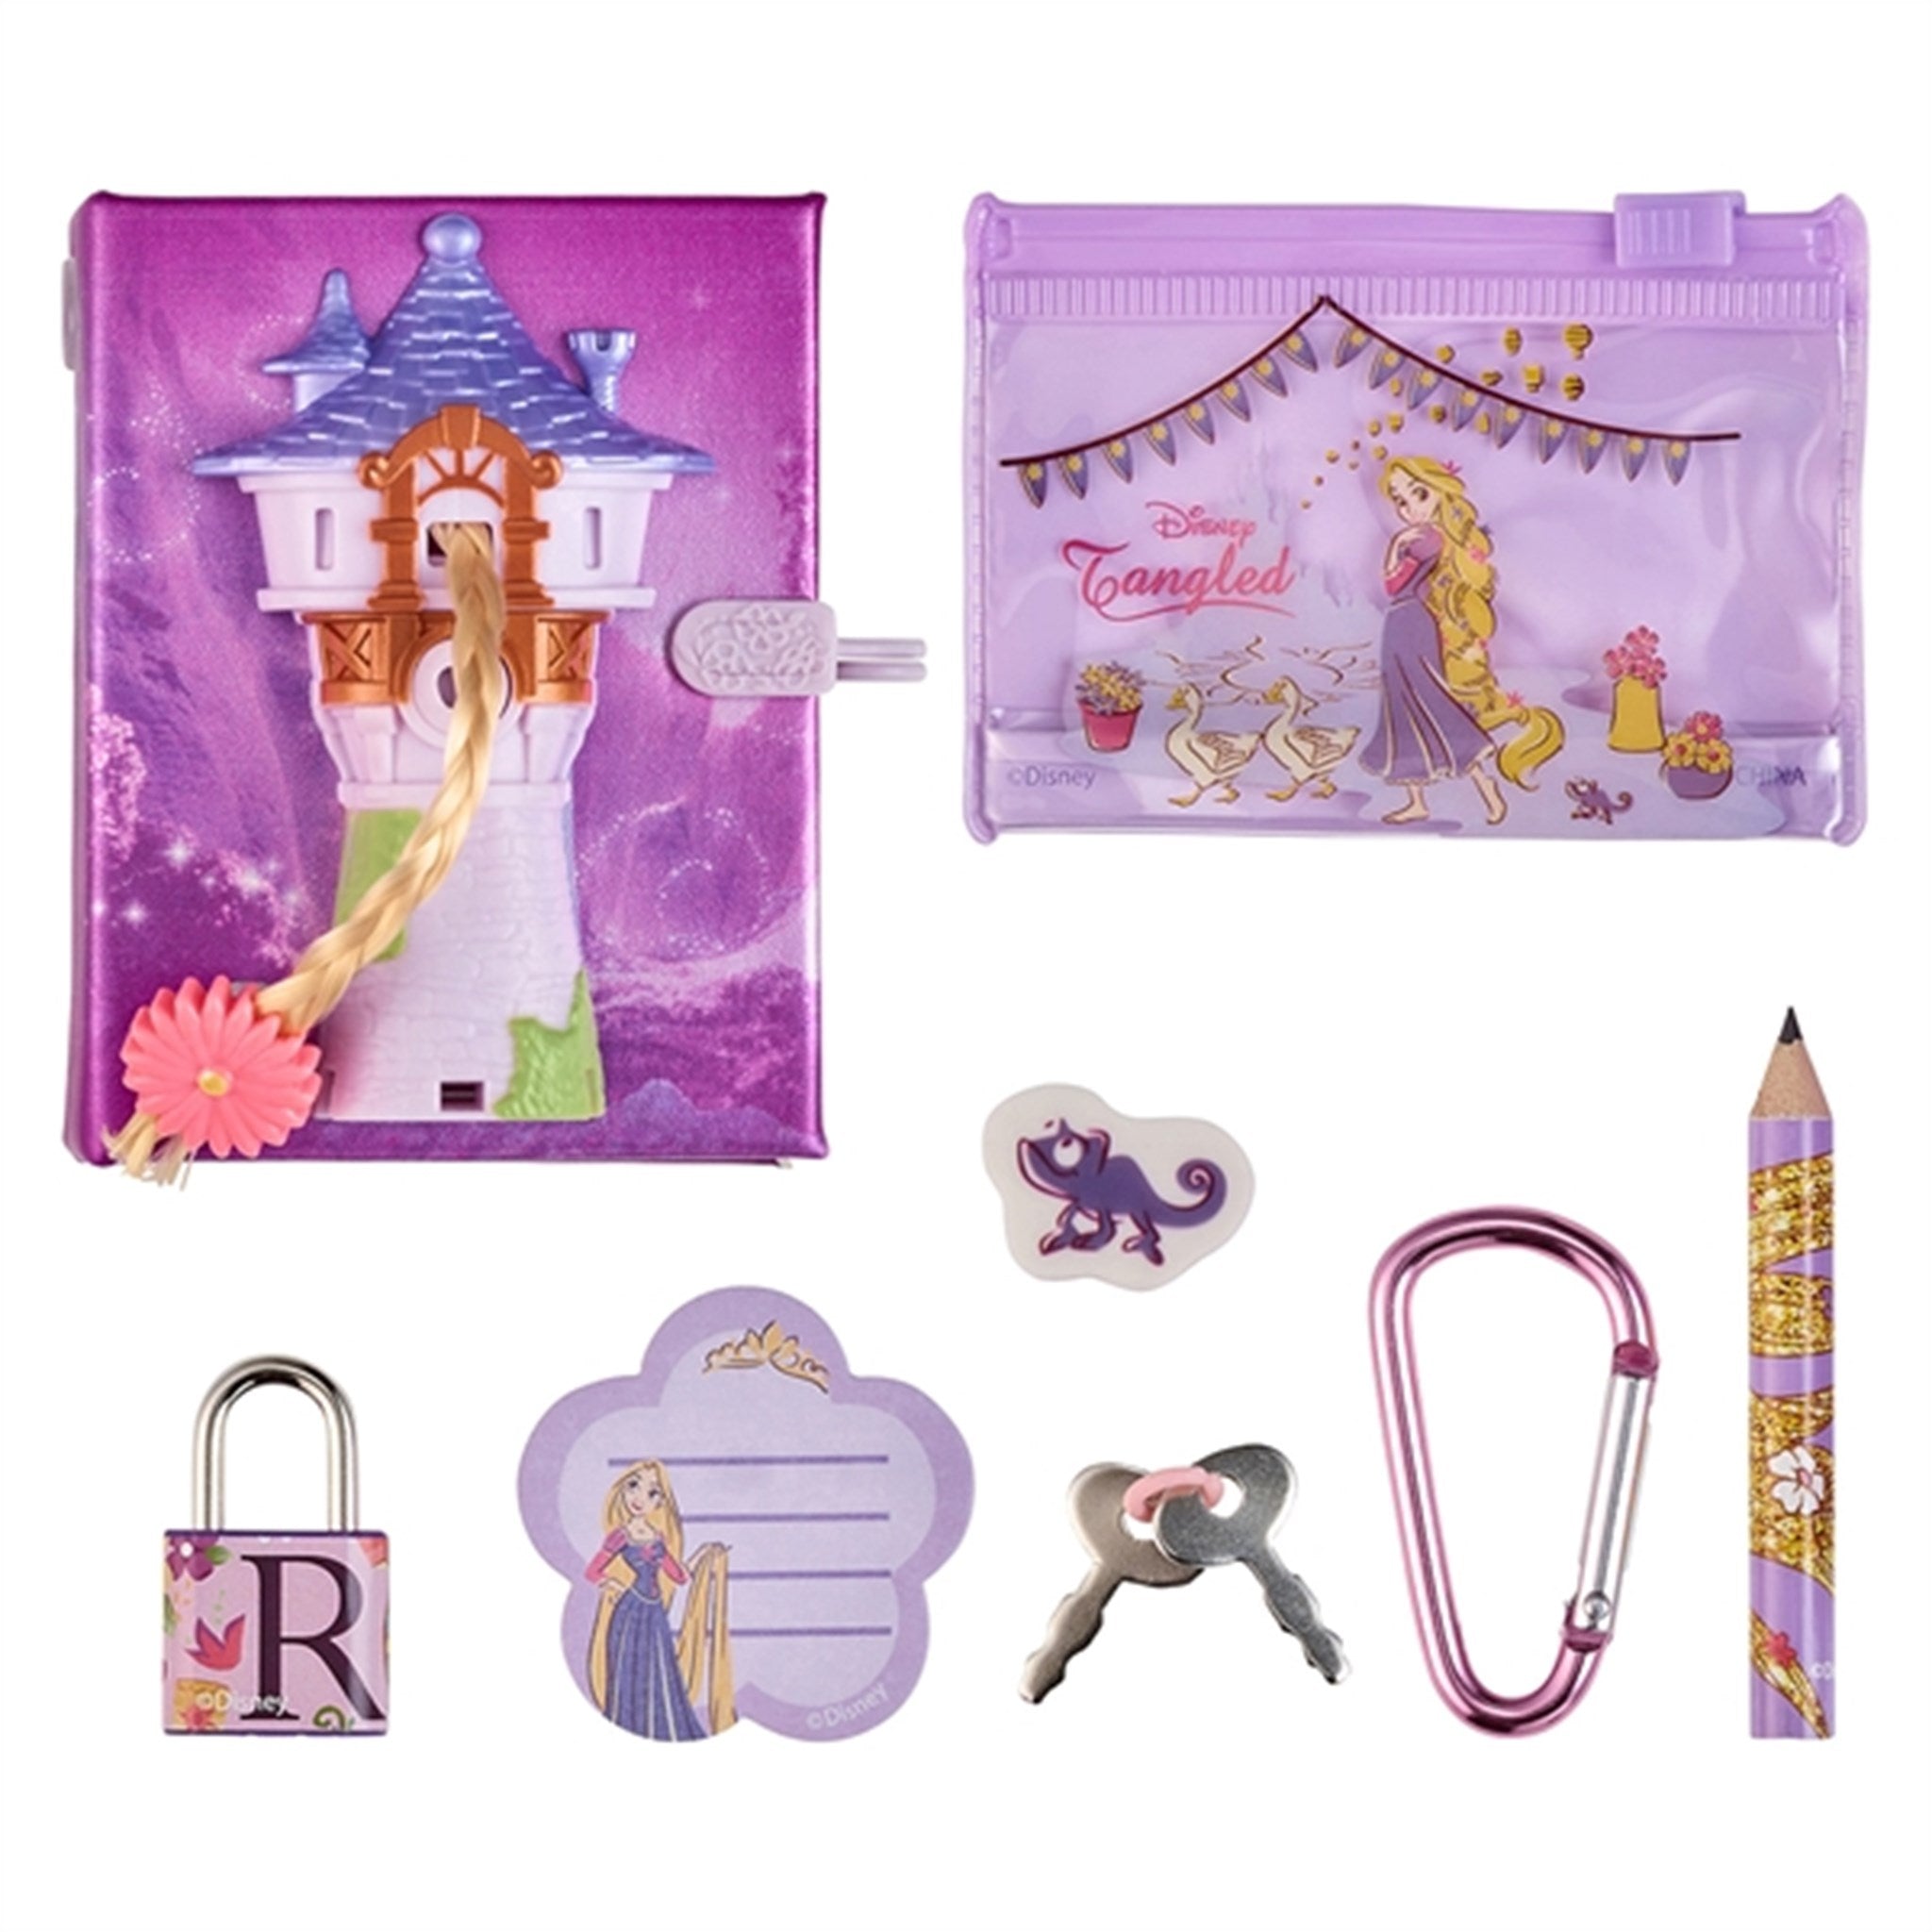 Real Littles Disney Journal Rapunzel 2